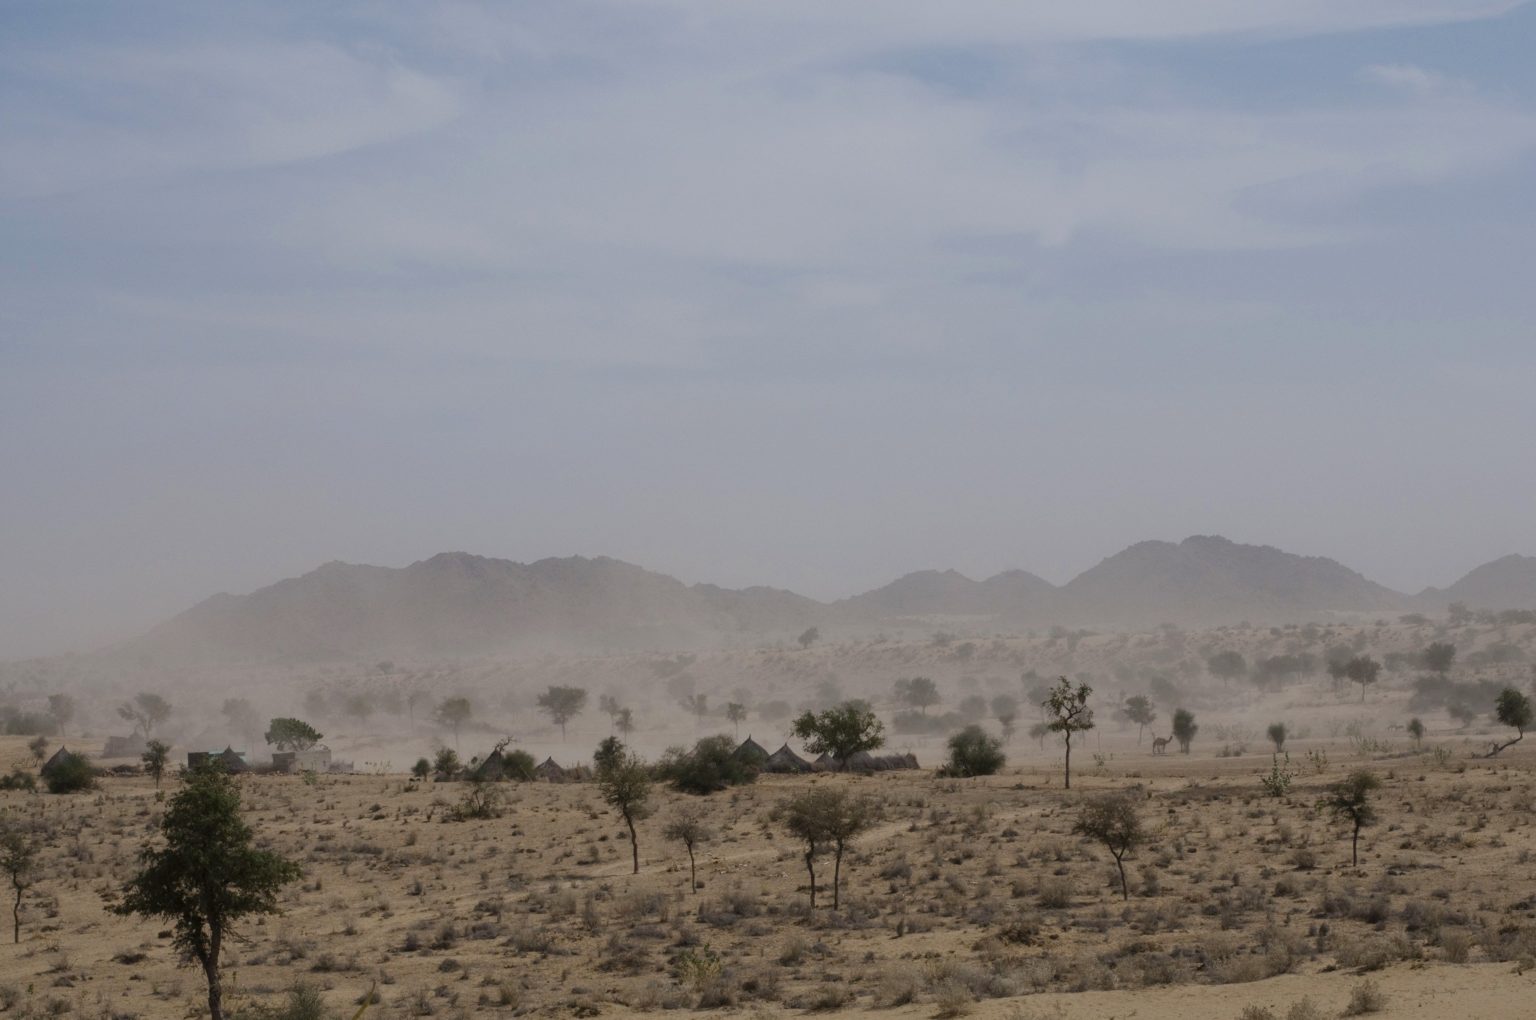 désert inde du nord rajasthan en moto 